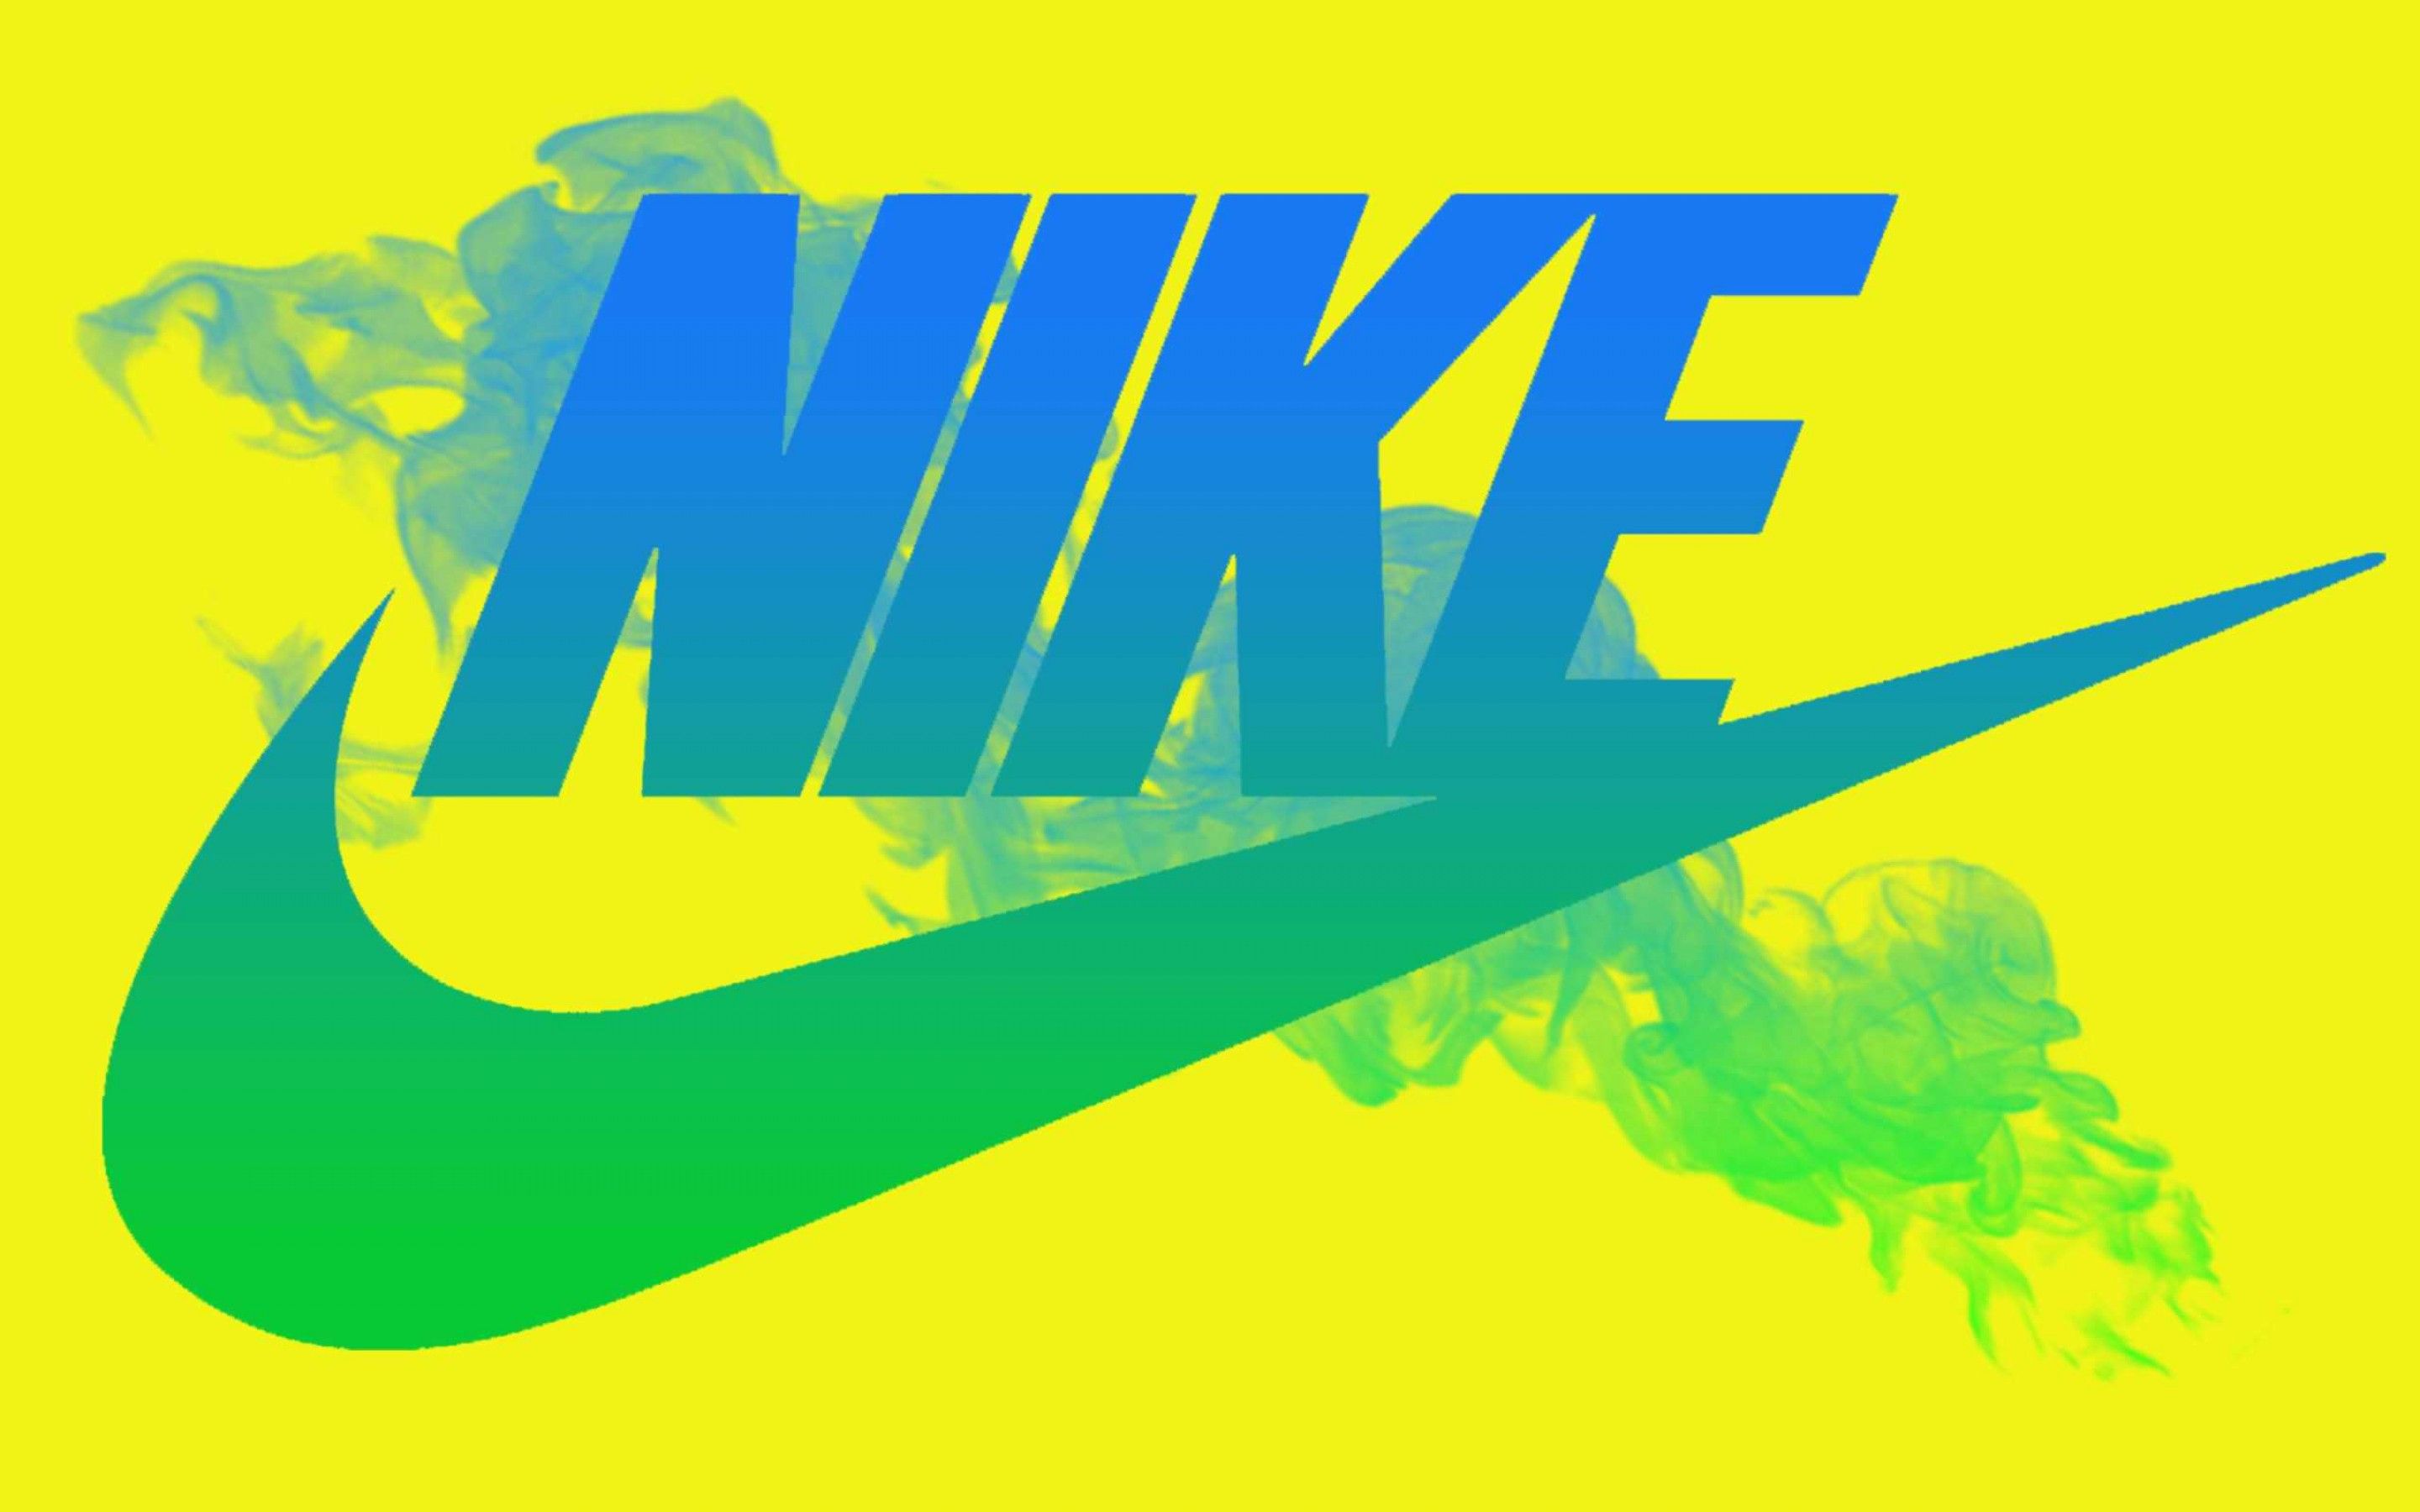 Nike HD Wallpapers: Những HD wallpapers về Nike đang chờ bạn khám phá! Tựa như một món quà đặc biệt dành tặng cho các tín đồ của thương hiệu này. Từ các thiết kế đơn giản đến các loại giày thể thao, từ logo đến hình ảnh người mẫu, bạn sẽ tìm thấy những hình ảnh đẹp nhất về Nike đang chờ đón bạn.